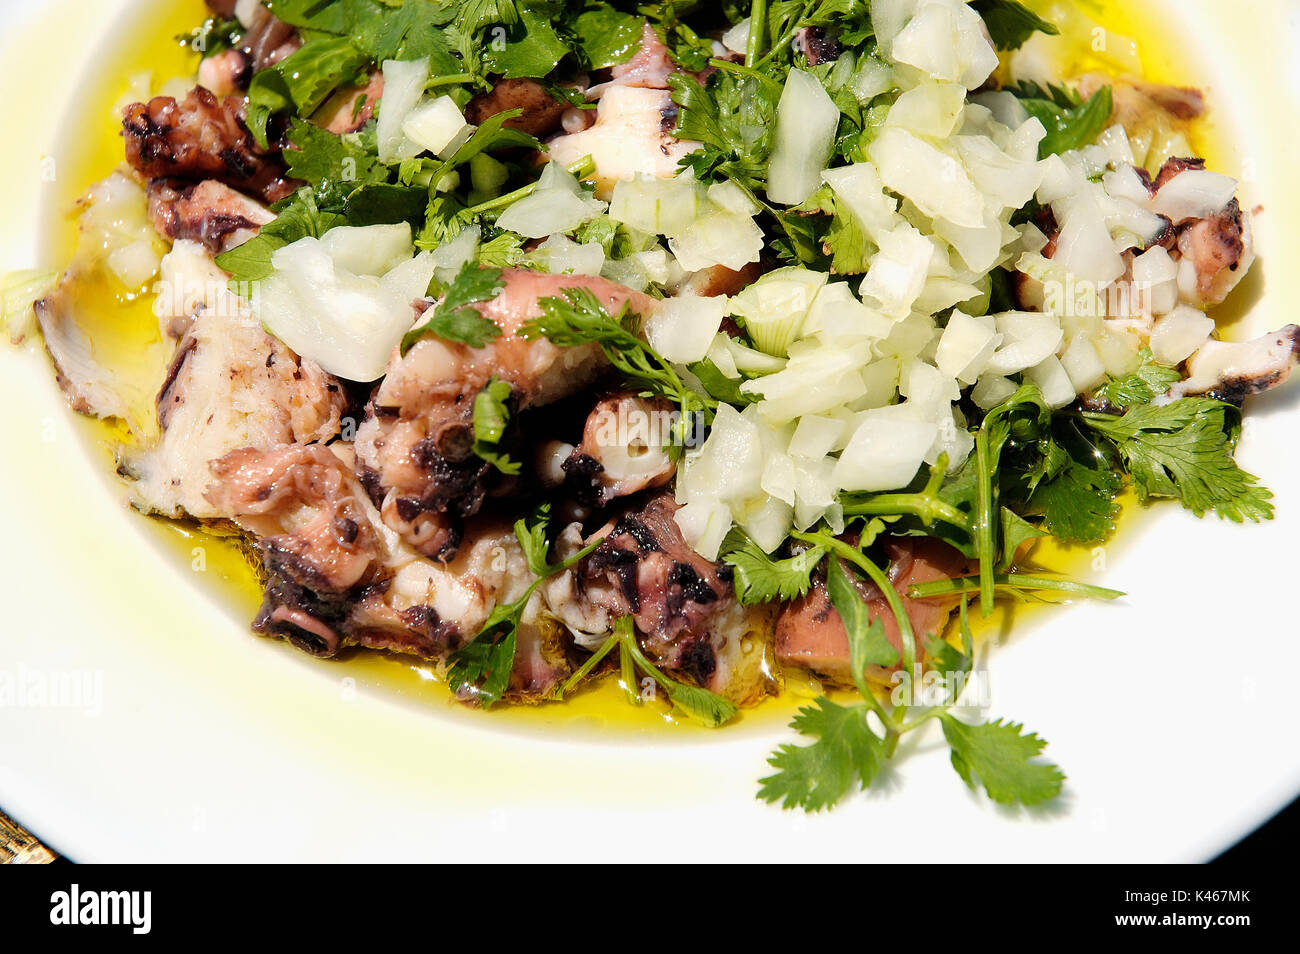 Oktopus Salat. Comporta, Alentejo Stockfoto